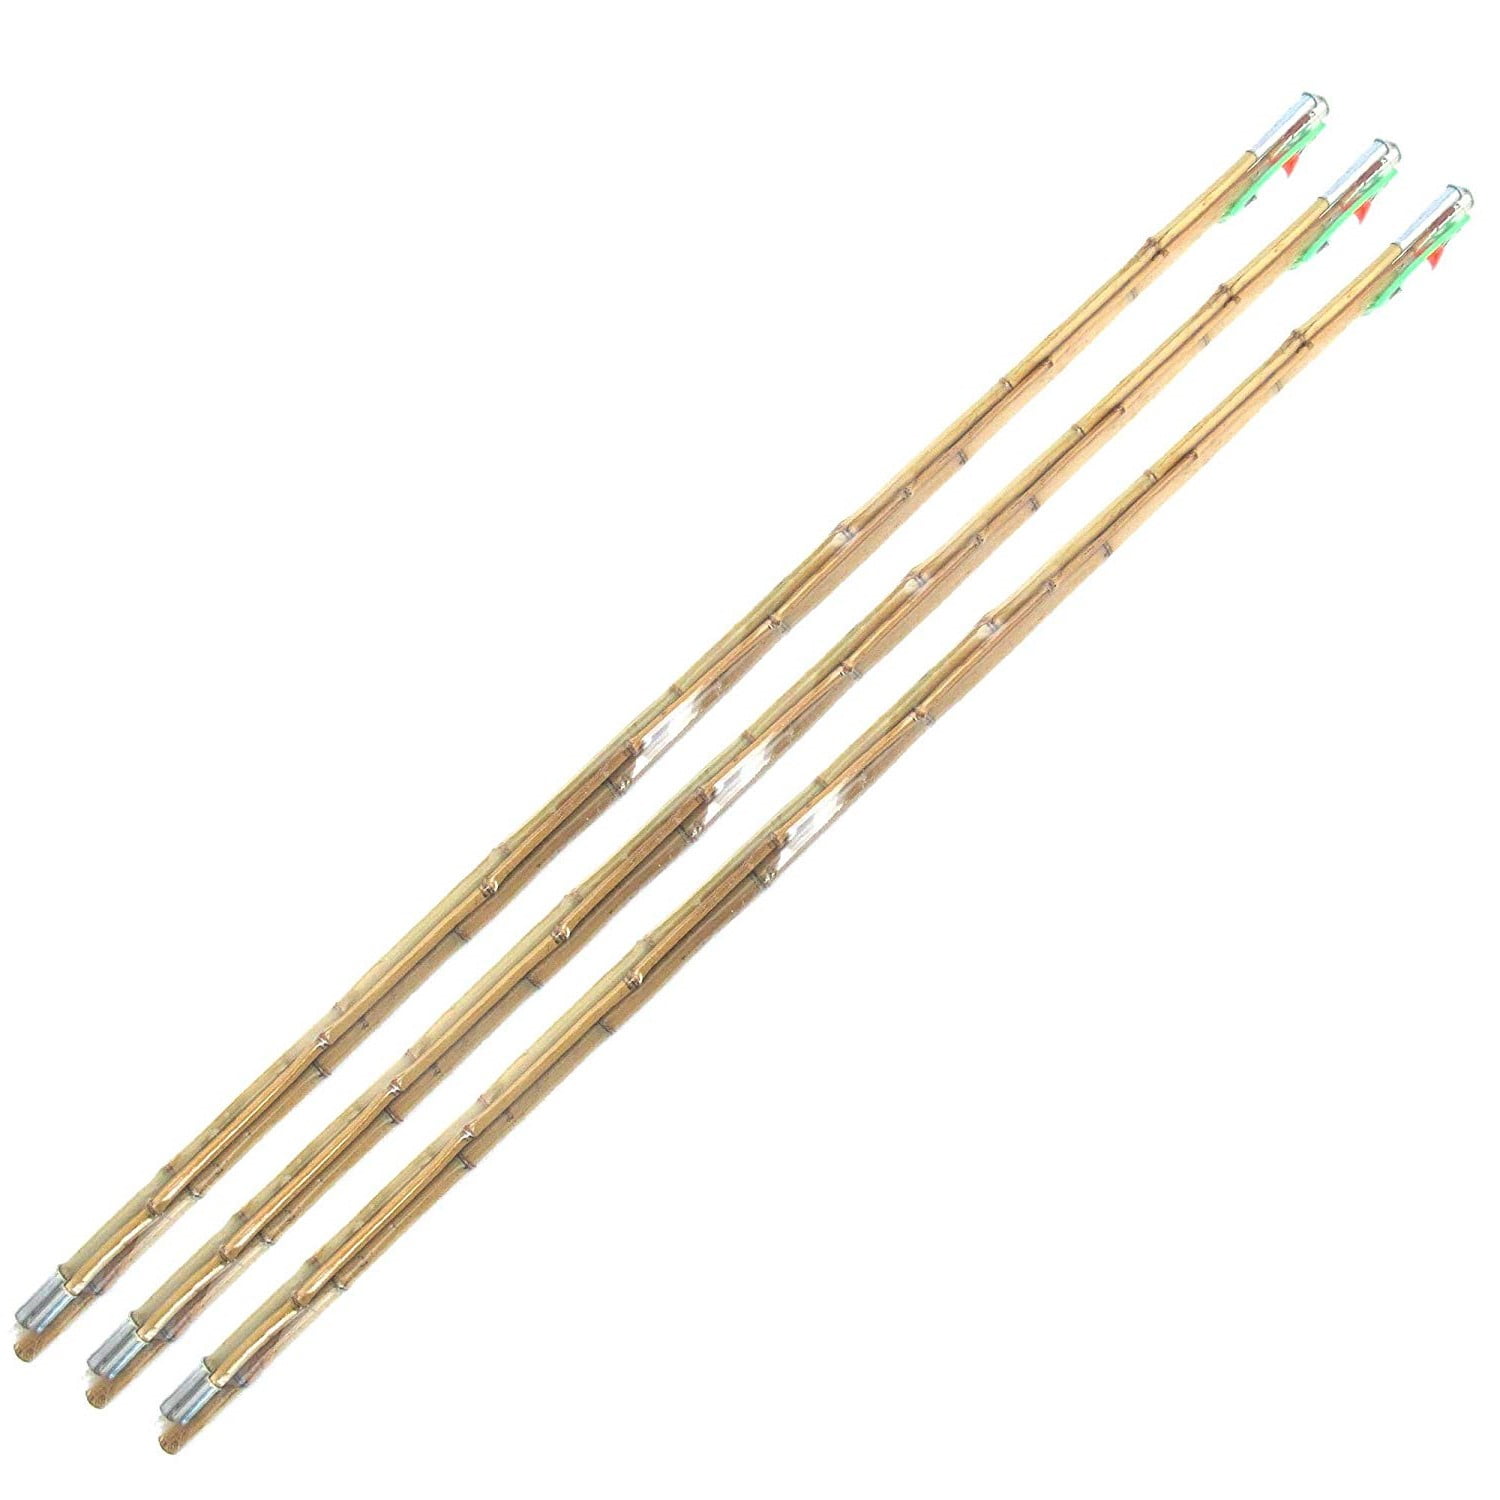 Bamboo Cane Fishing Pole w/ Bobber, Hook, Line, Sinker - Vintage